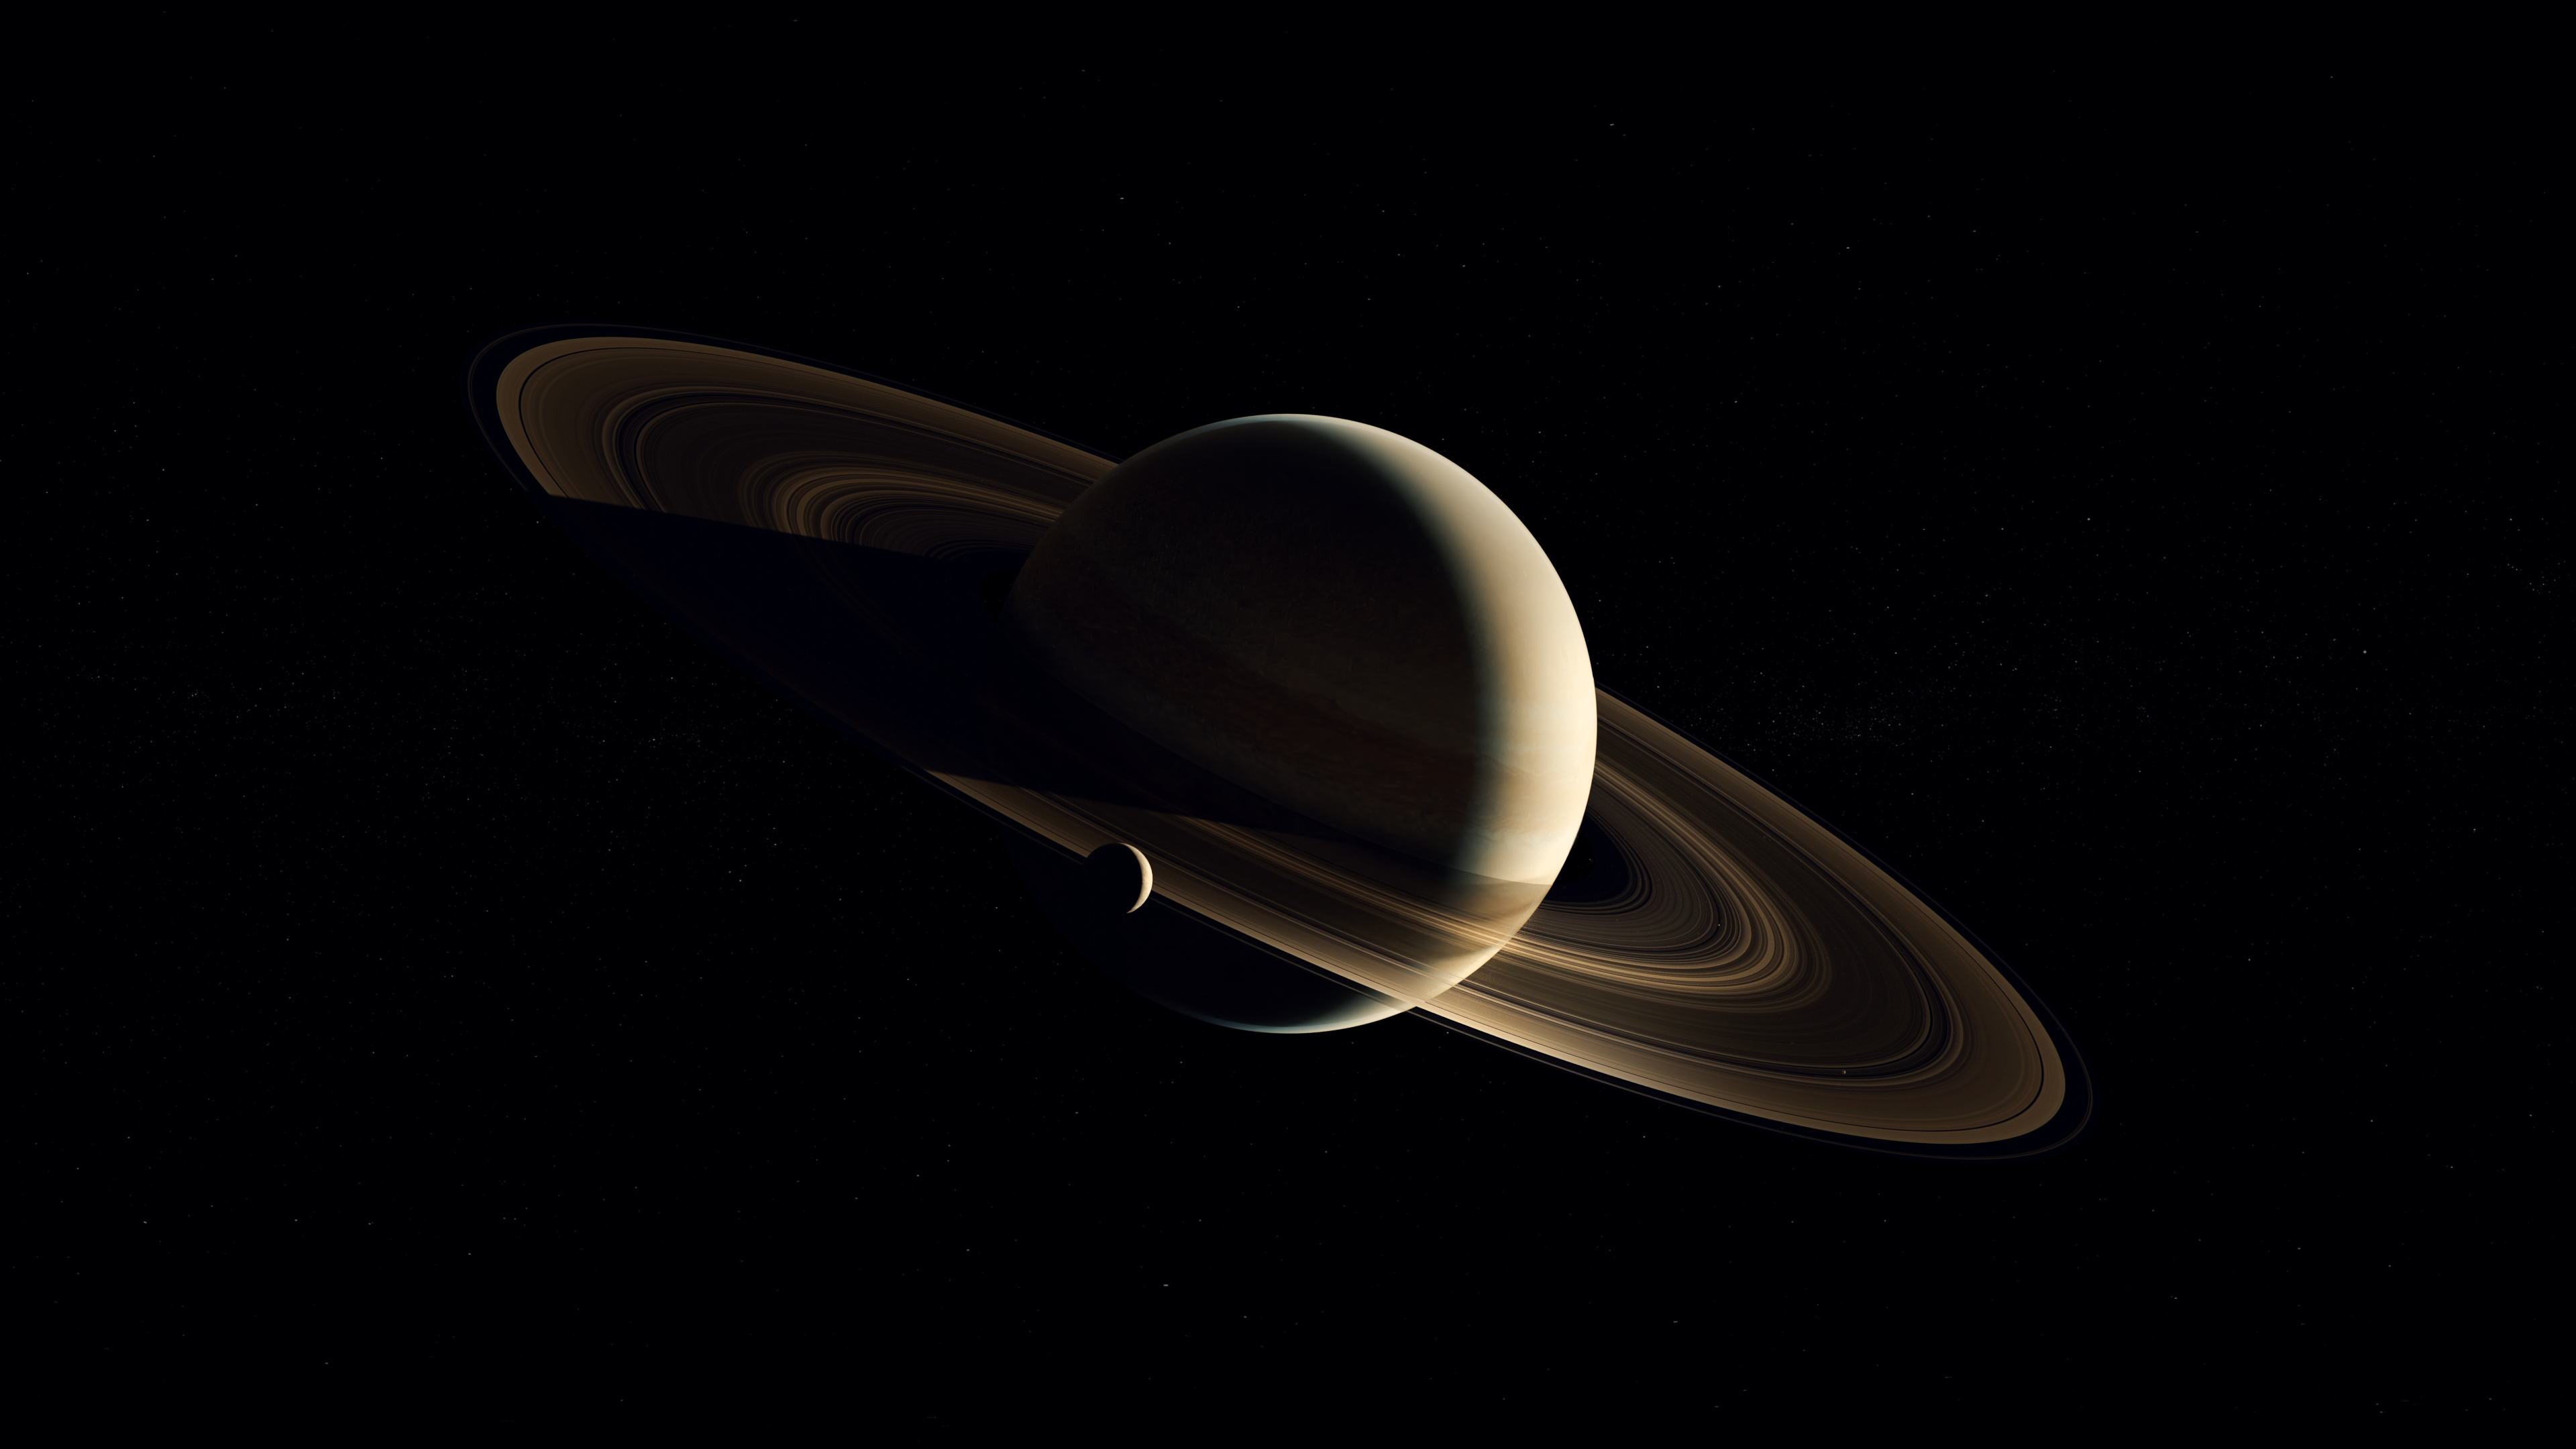 Sci Fi Saturn 4k Ultra HD Wallpaper